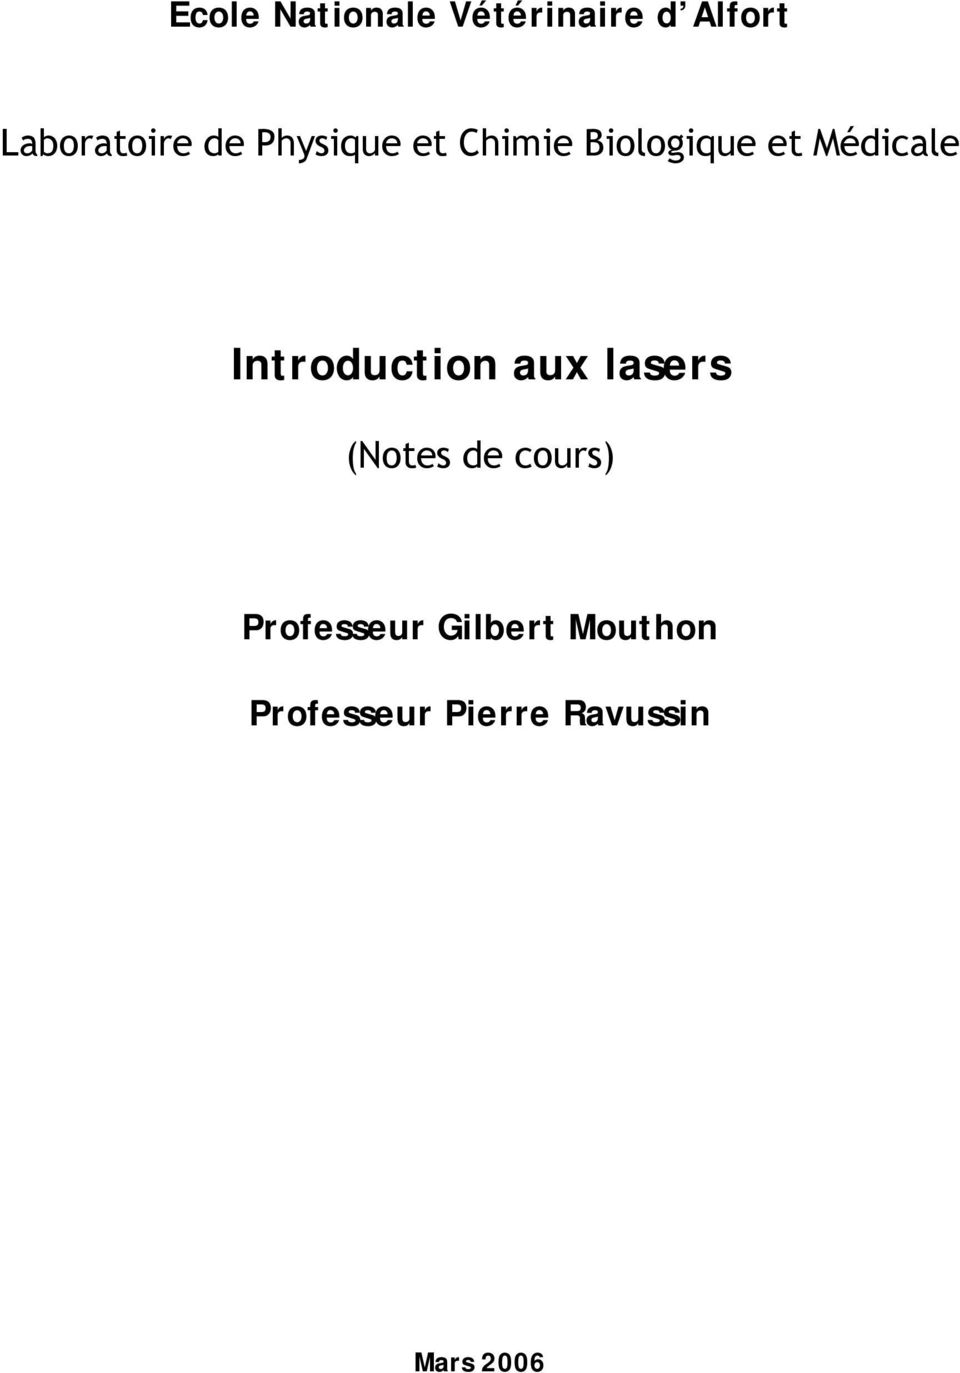 Introduction aux lasers (Notes de cours)